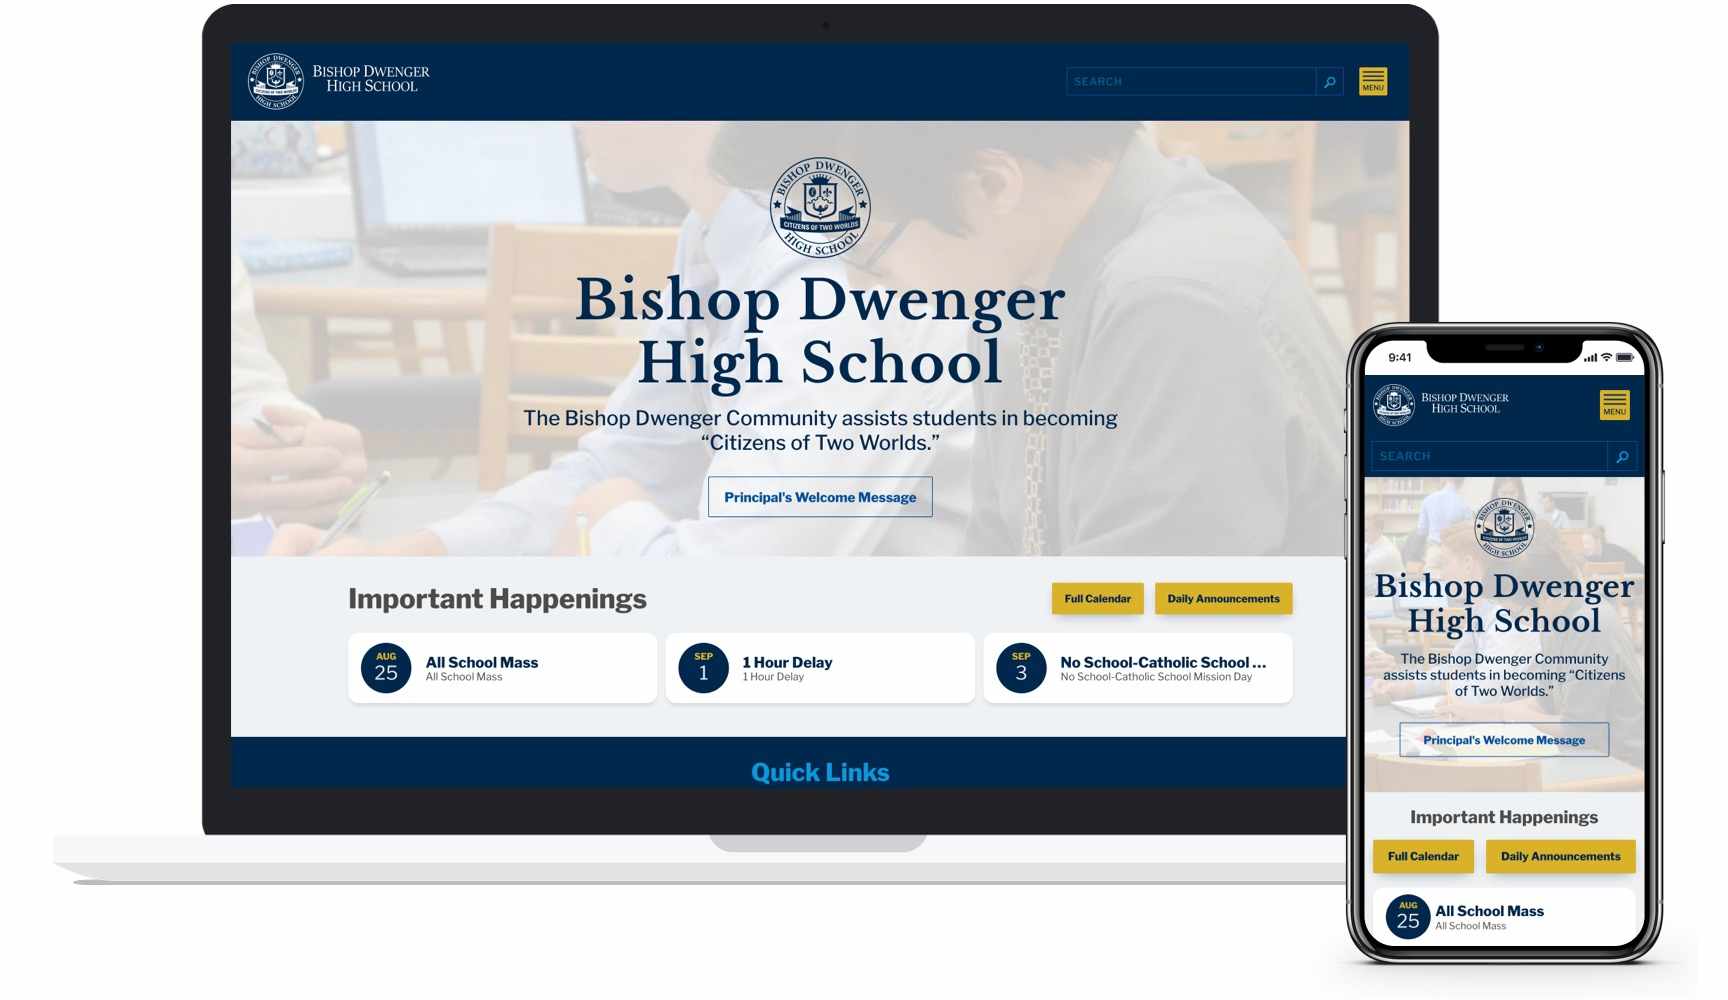 Bishop Dwenger High School Website on Mobile and Desktop